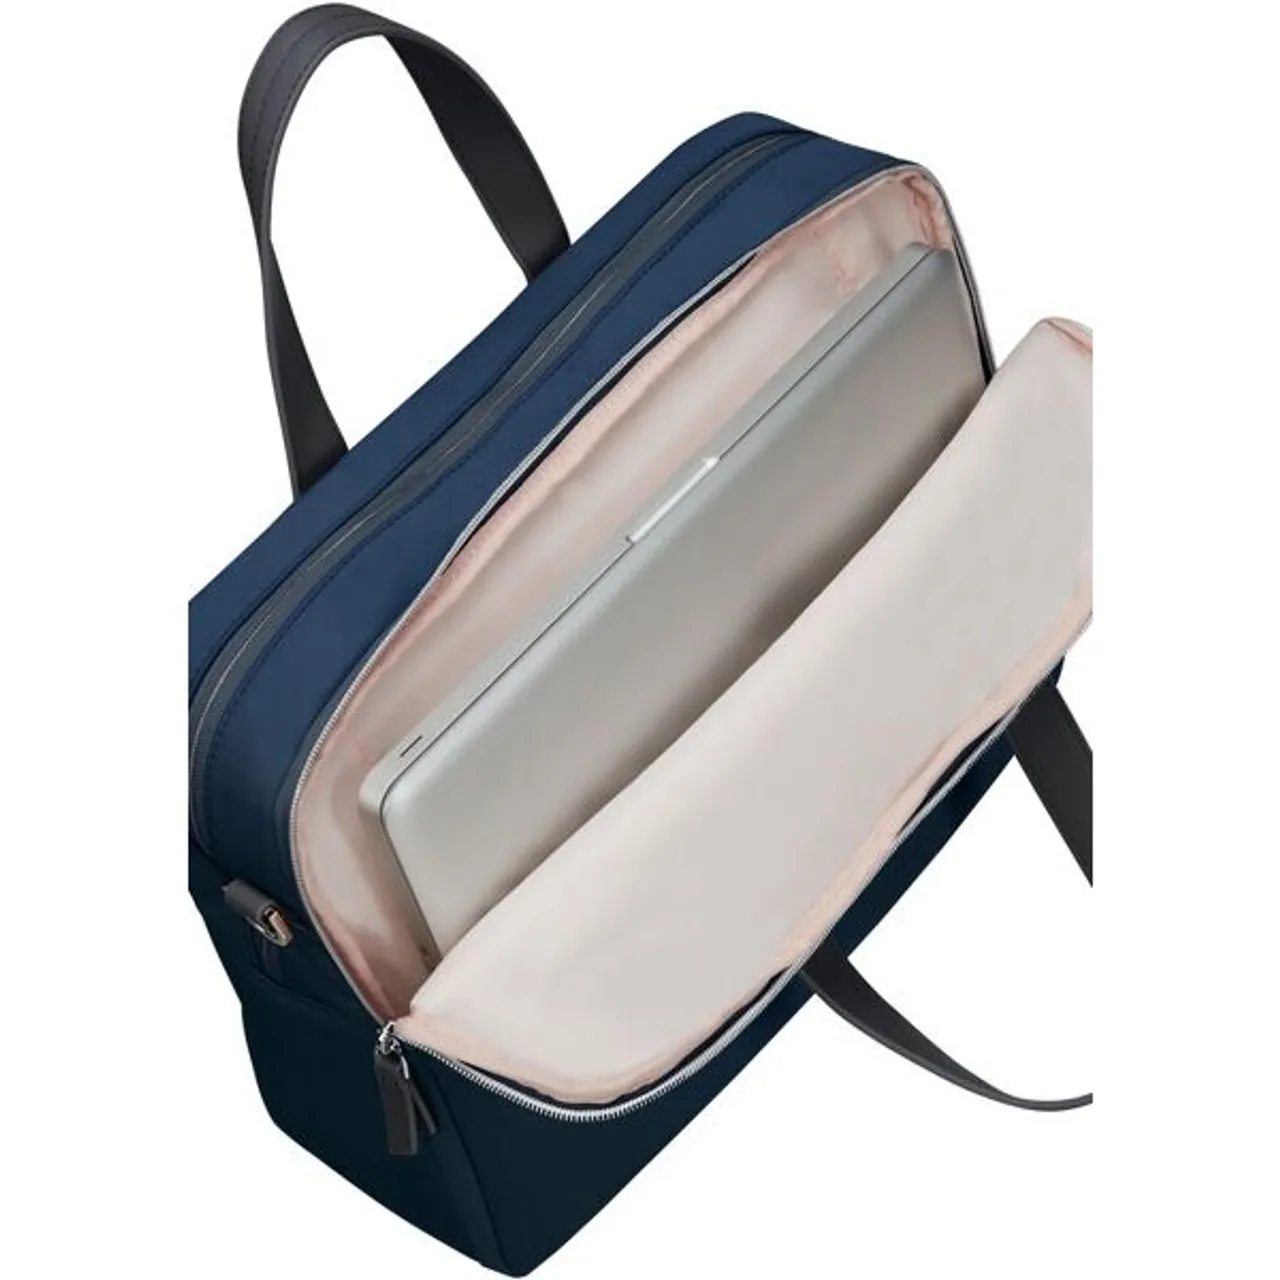 Laptoptasche SAMSONITE "Eco Wave" Gr. B/H/T: 39 cm x 29 cm x 11 cm, blau Herren Taschen Koffer